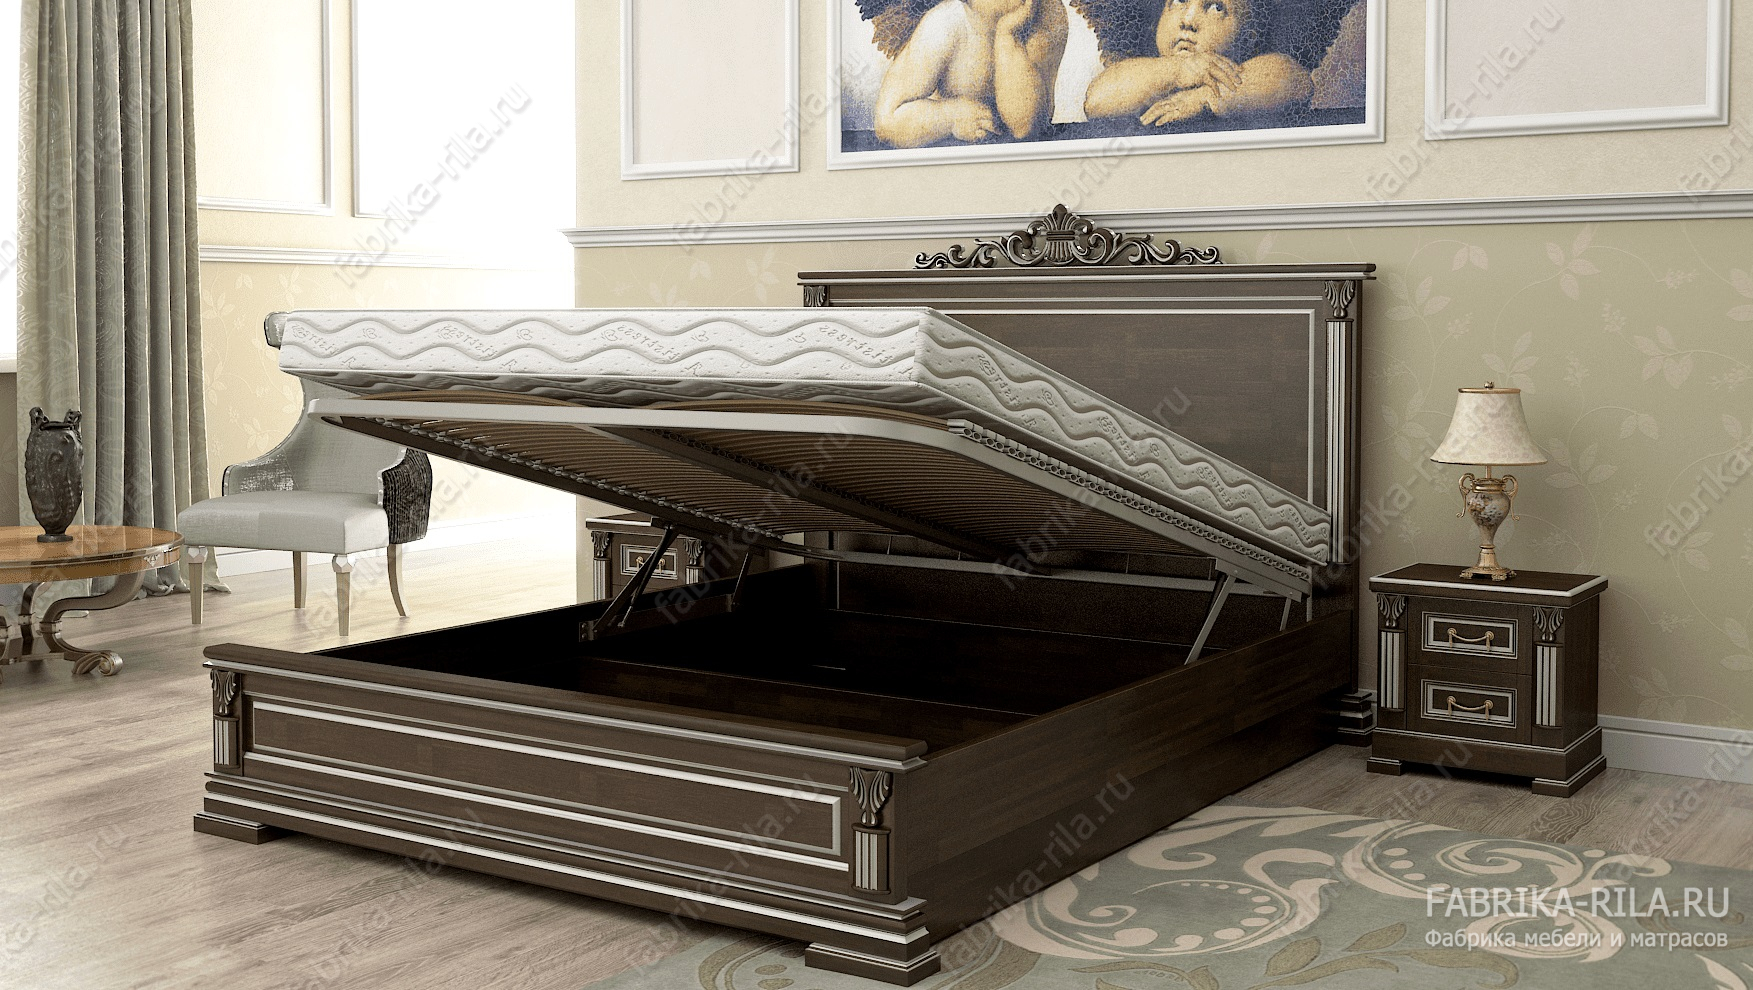 Кровать Viktori 1 — 180x190 см. из сосны